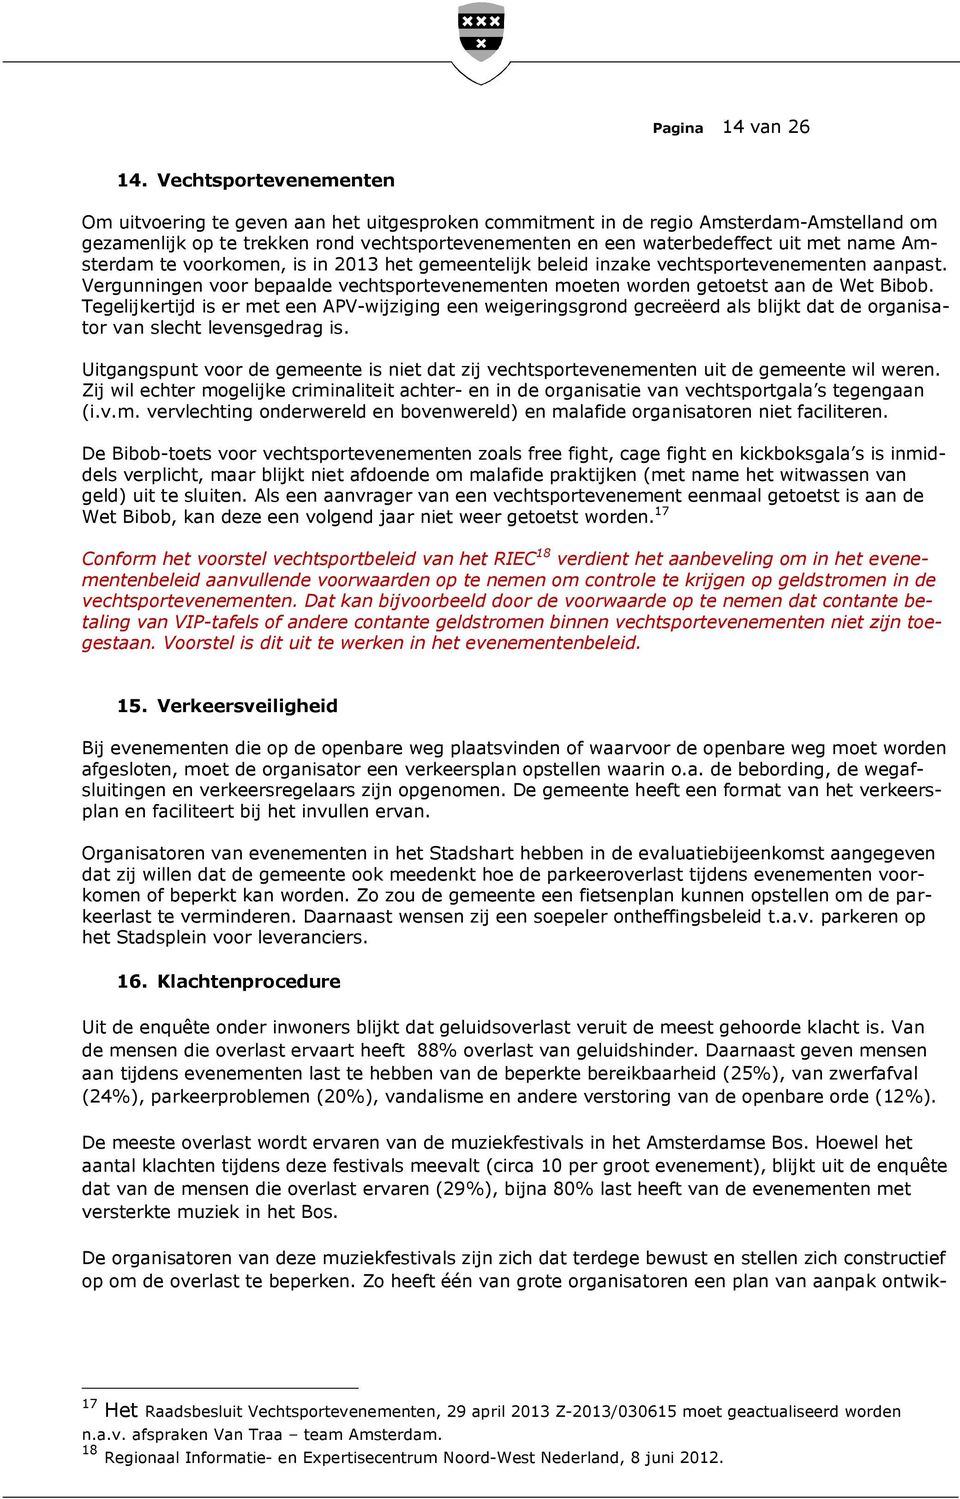 name Amsterdam te voorkomen, is in 2013 het gemeentelijk beleid inzake vechtsportevenementen aanpast. Vergunningen voor bepaalde vechtsportevenementen moeten worden getoetst aan de Wet Bibob.